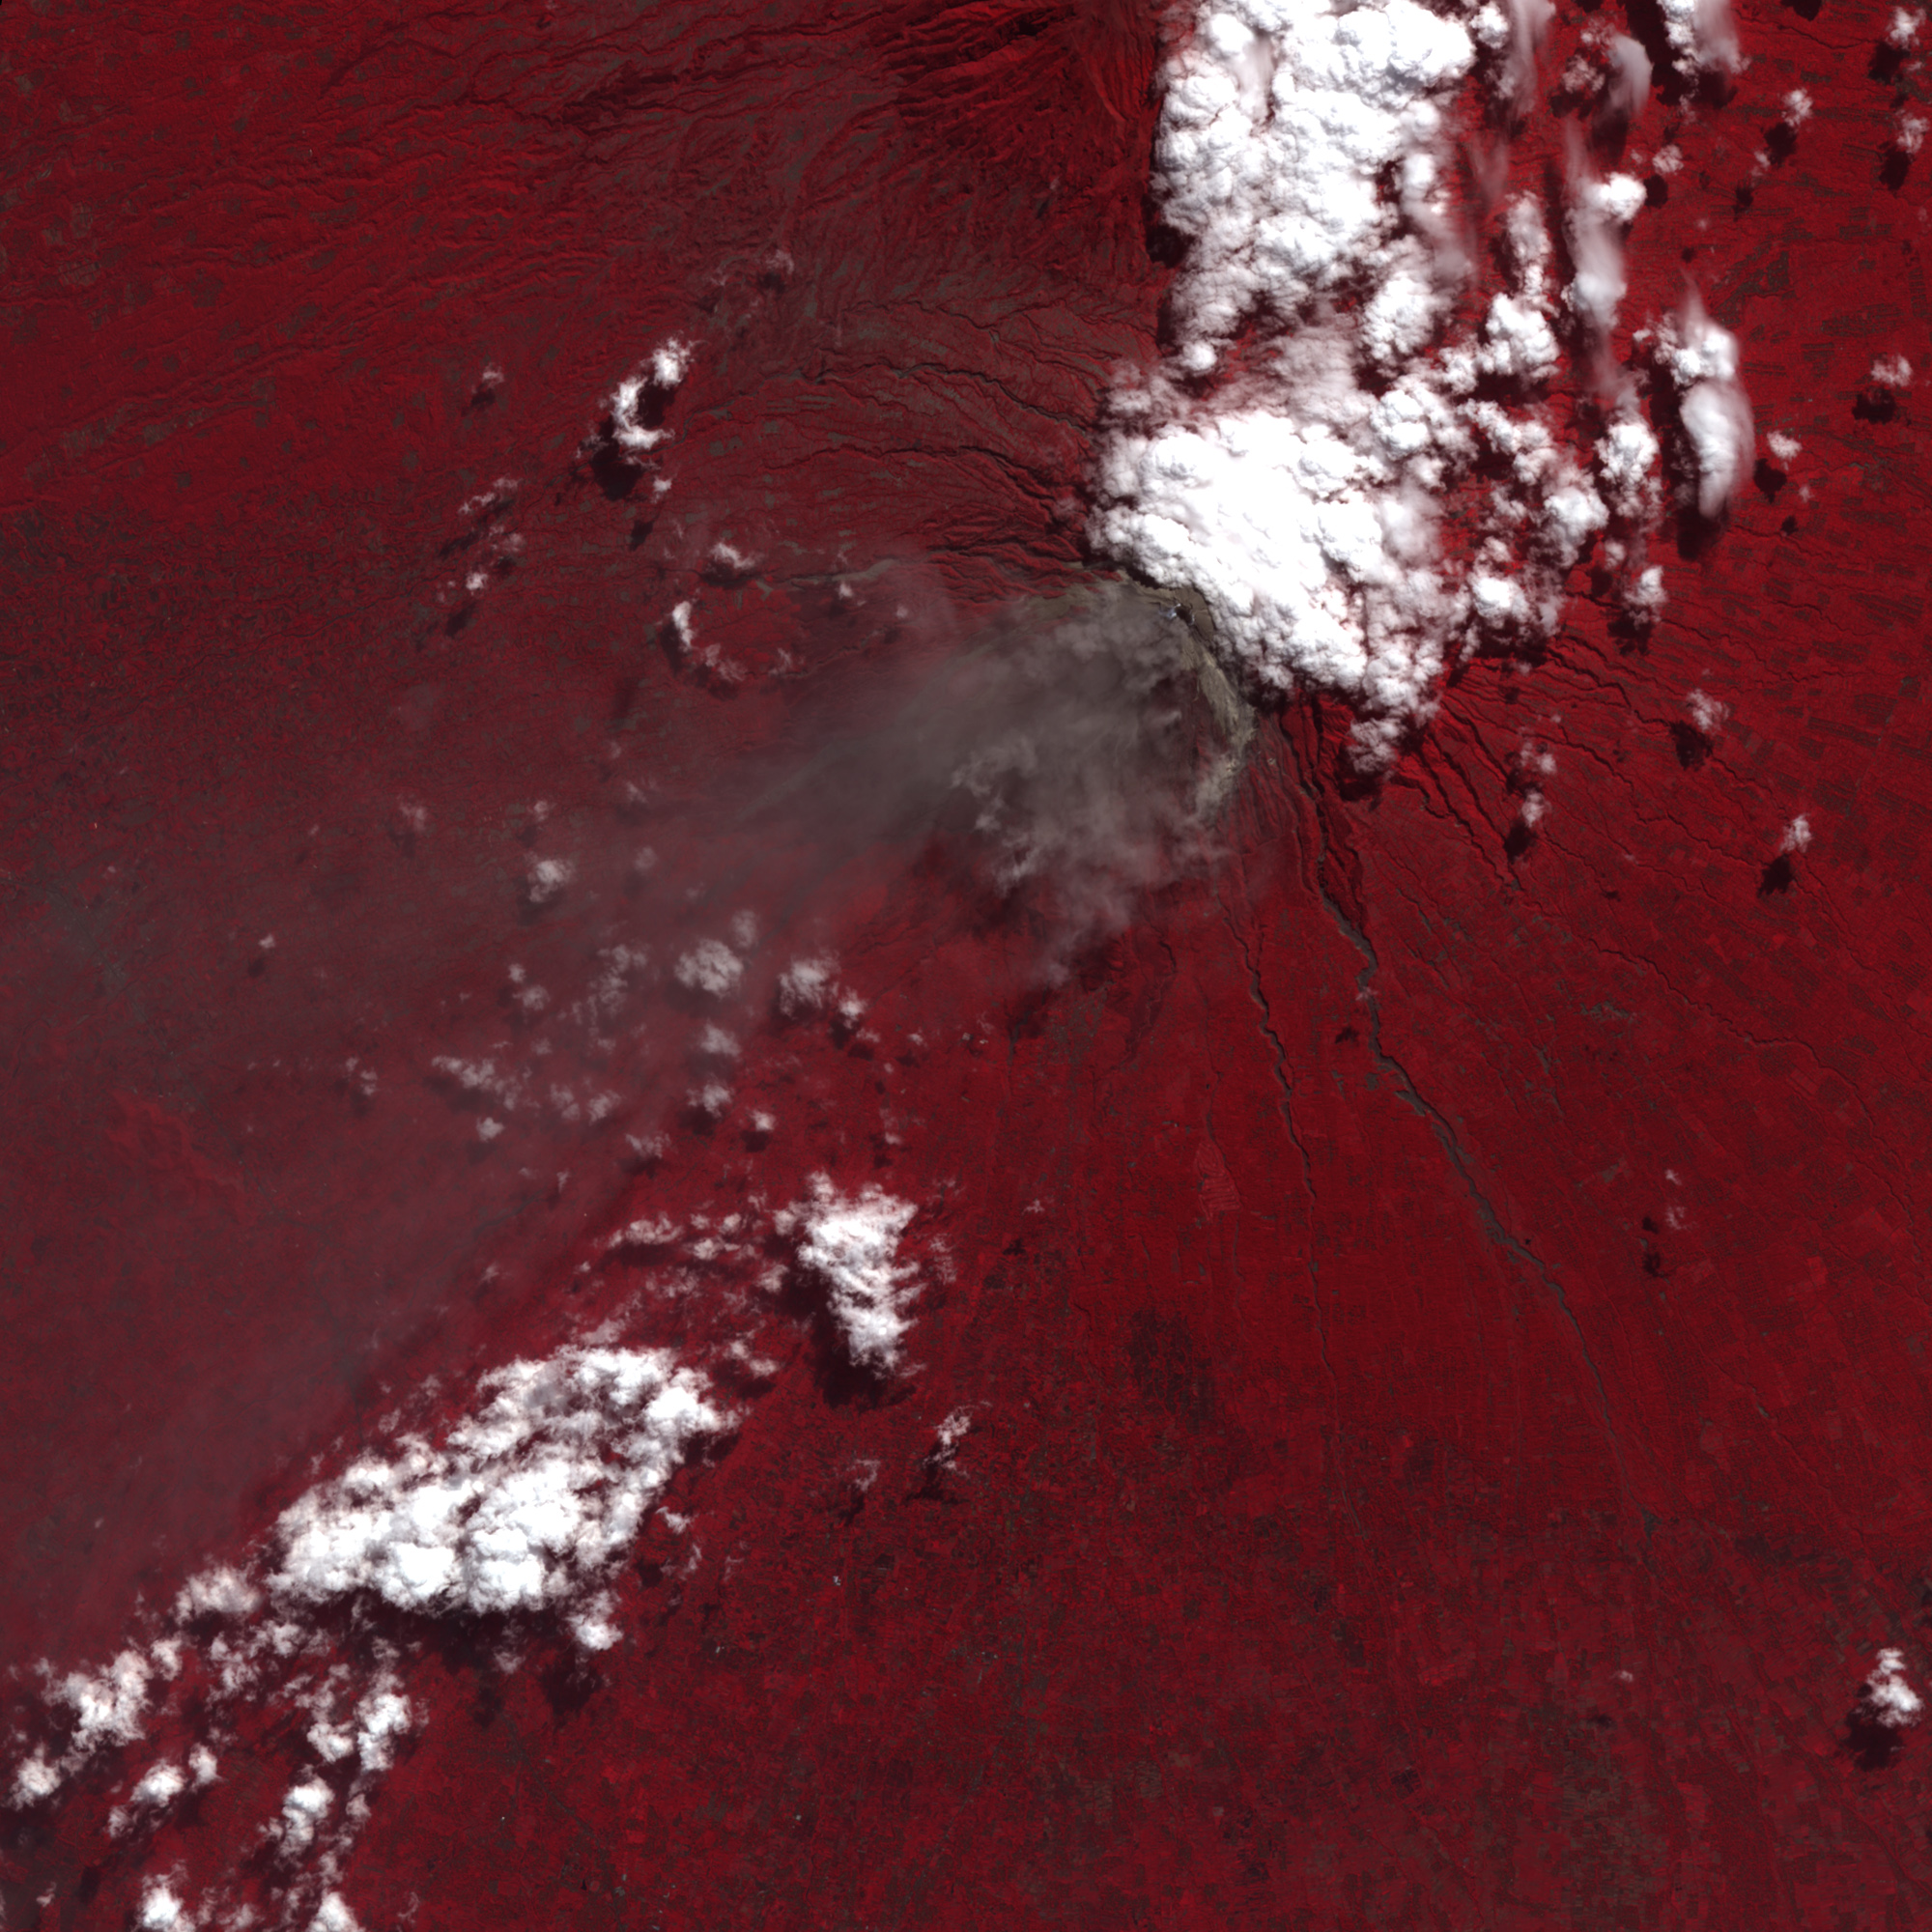 Le volcan Merapi vu par ASTER, le 6 juin 2006